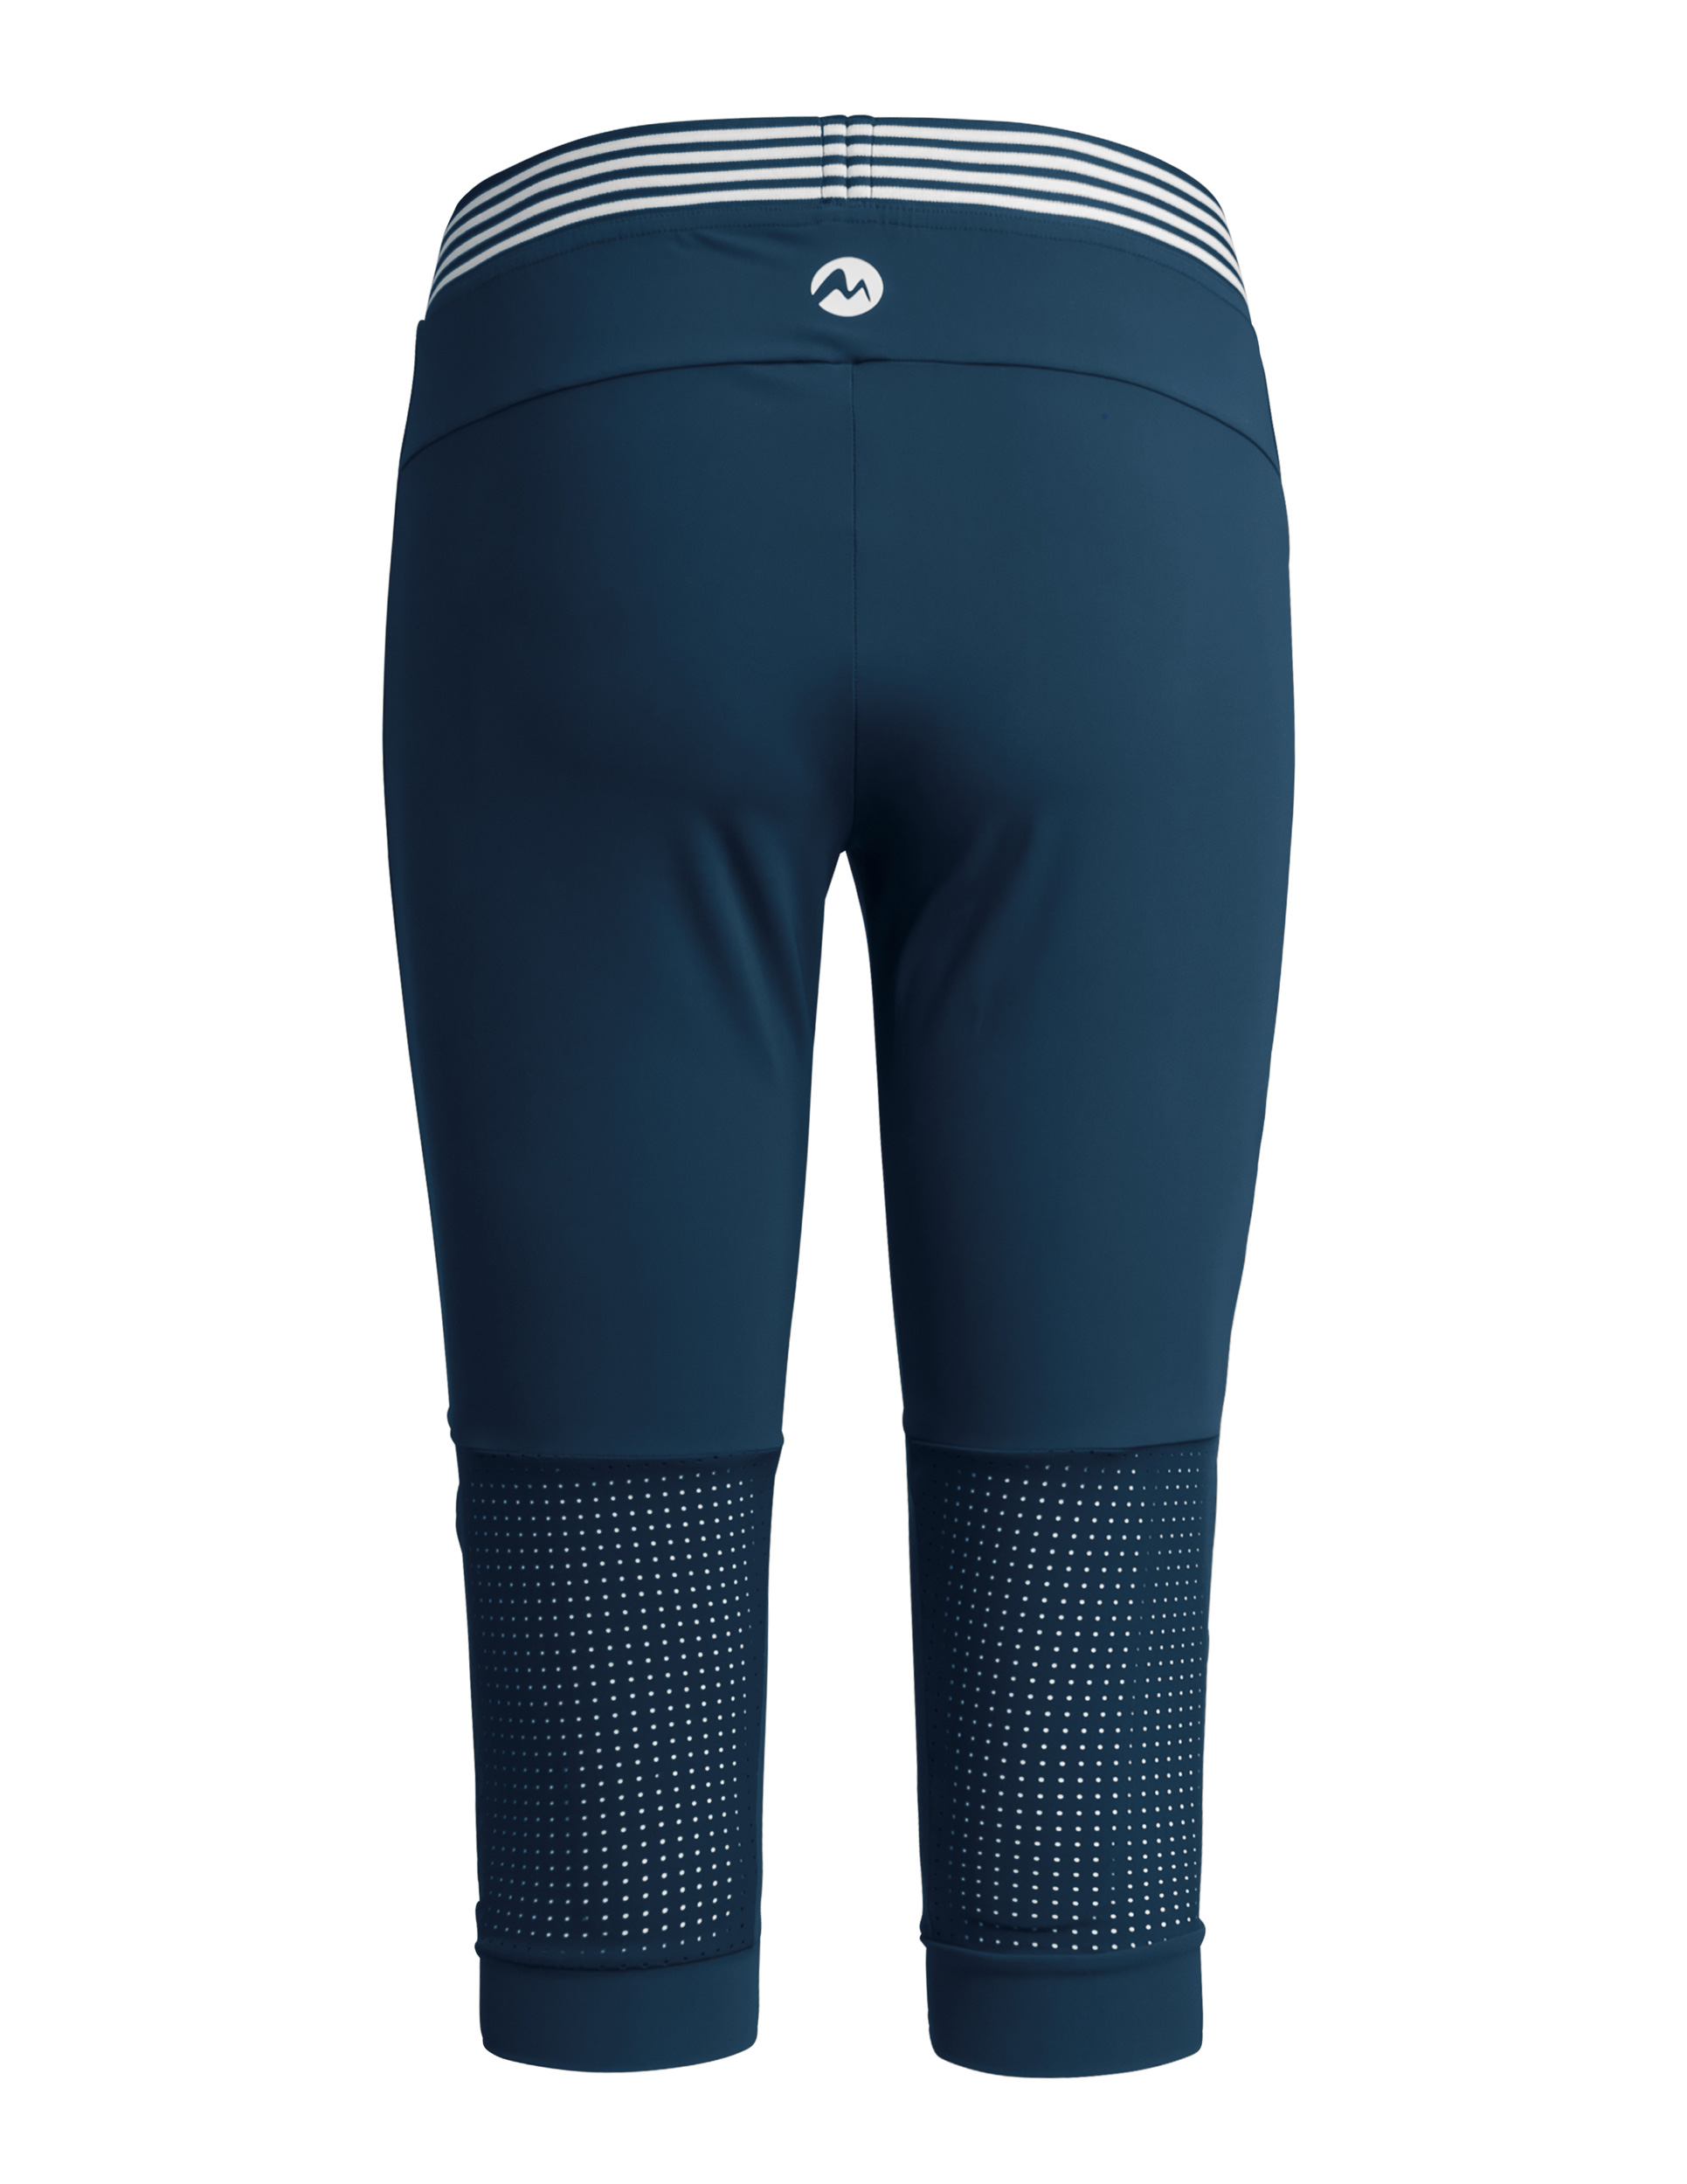 Martini Sportswear Presto - Shorts & 3/4-Hosen - Online kaufen bei Sport  Gardena | Tights